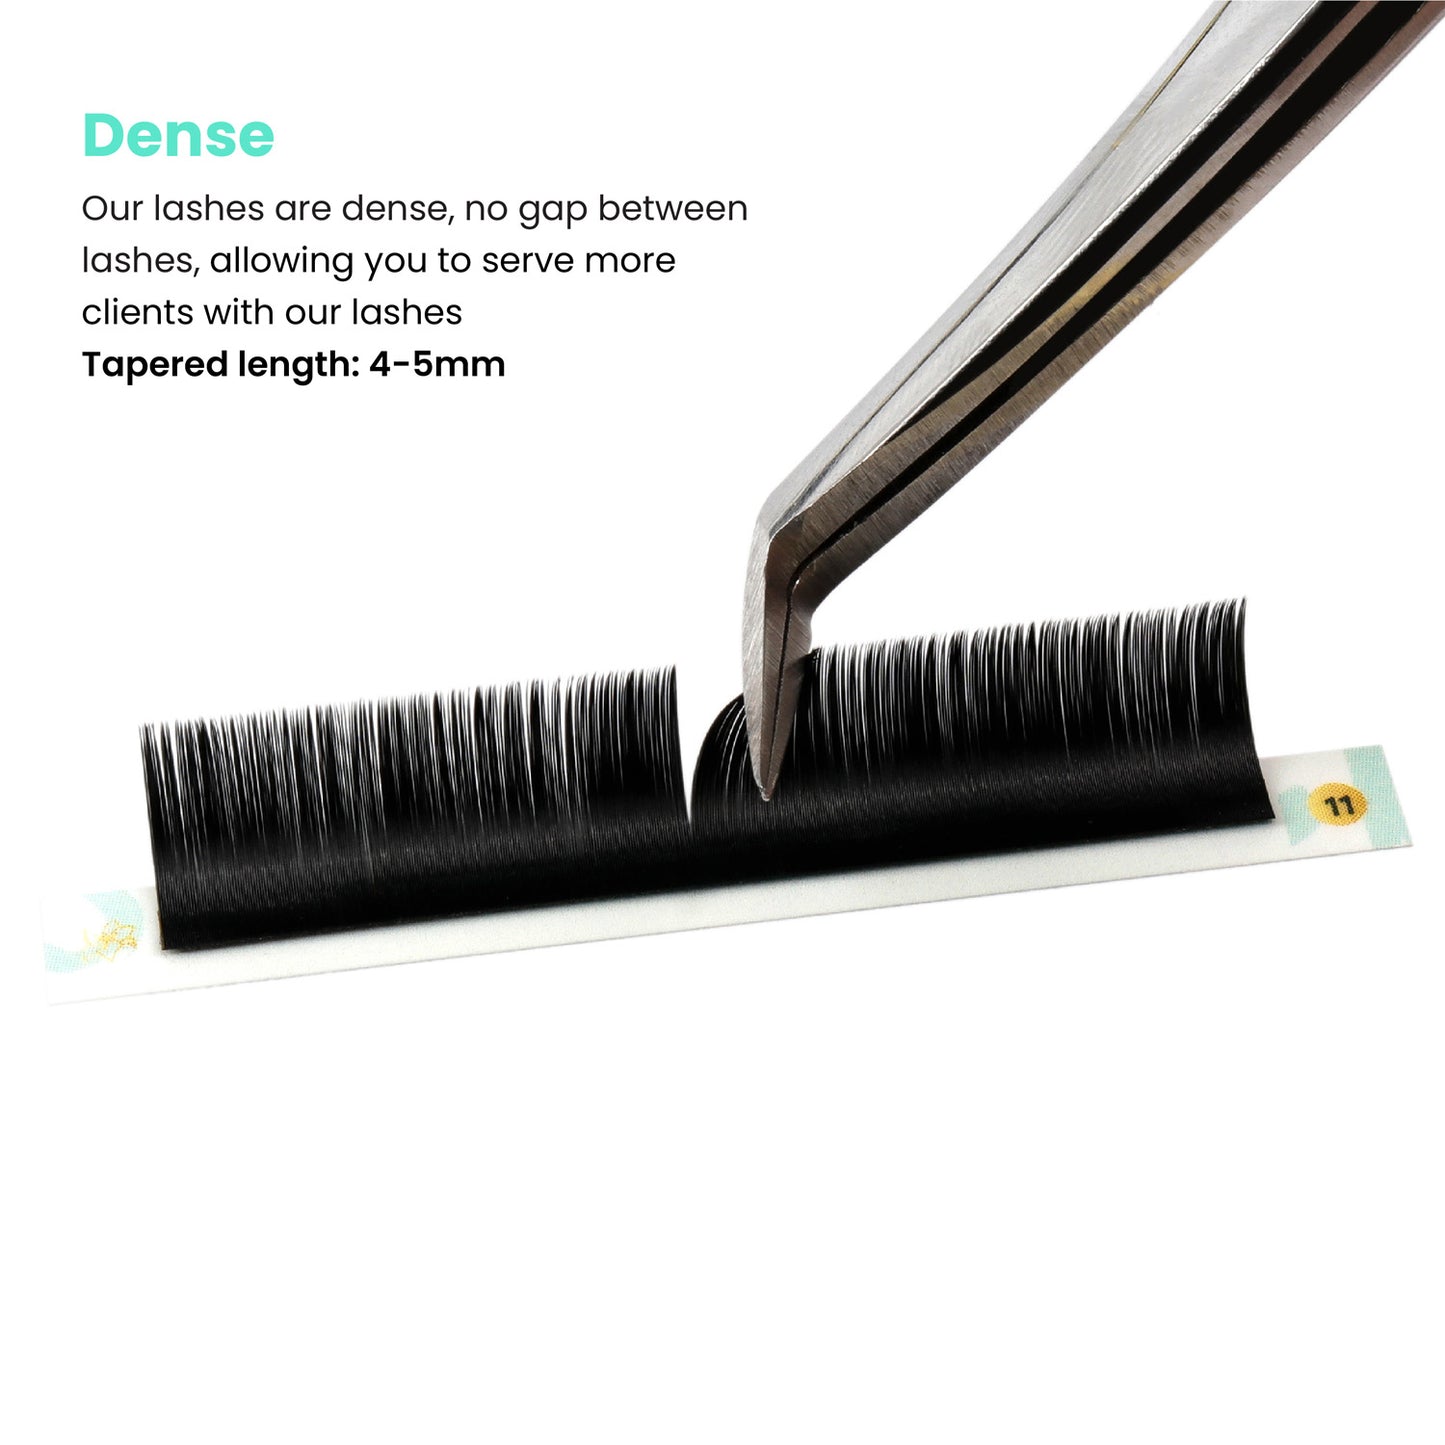 Tweezer brushing through Super Mink classic eyelash strip, showcasing dense softness.